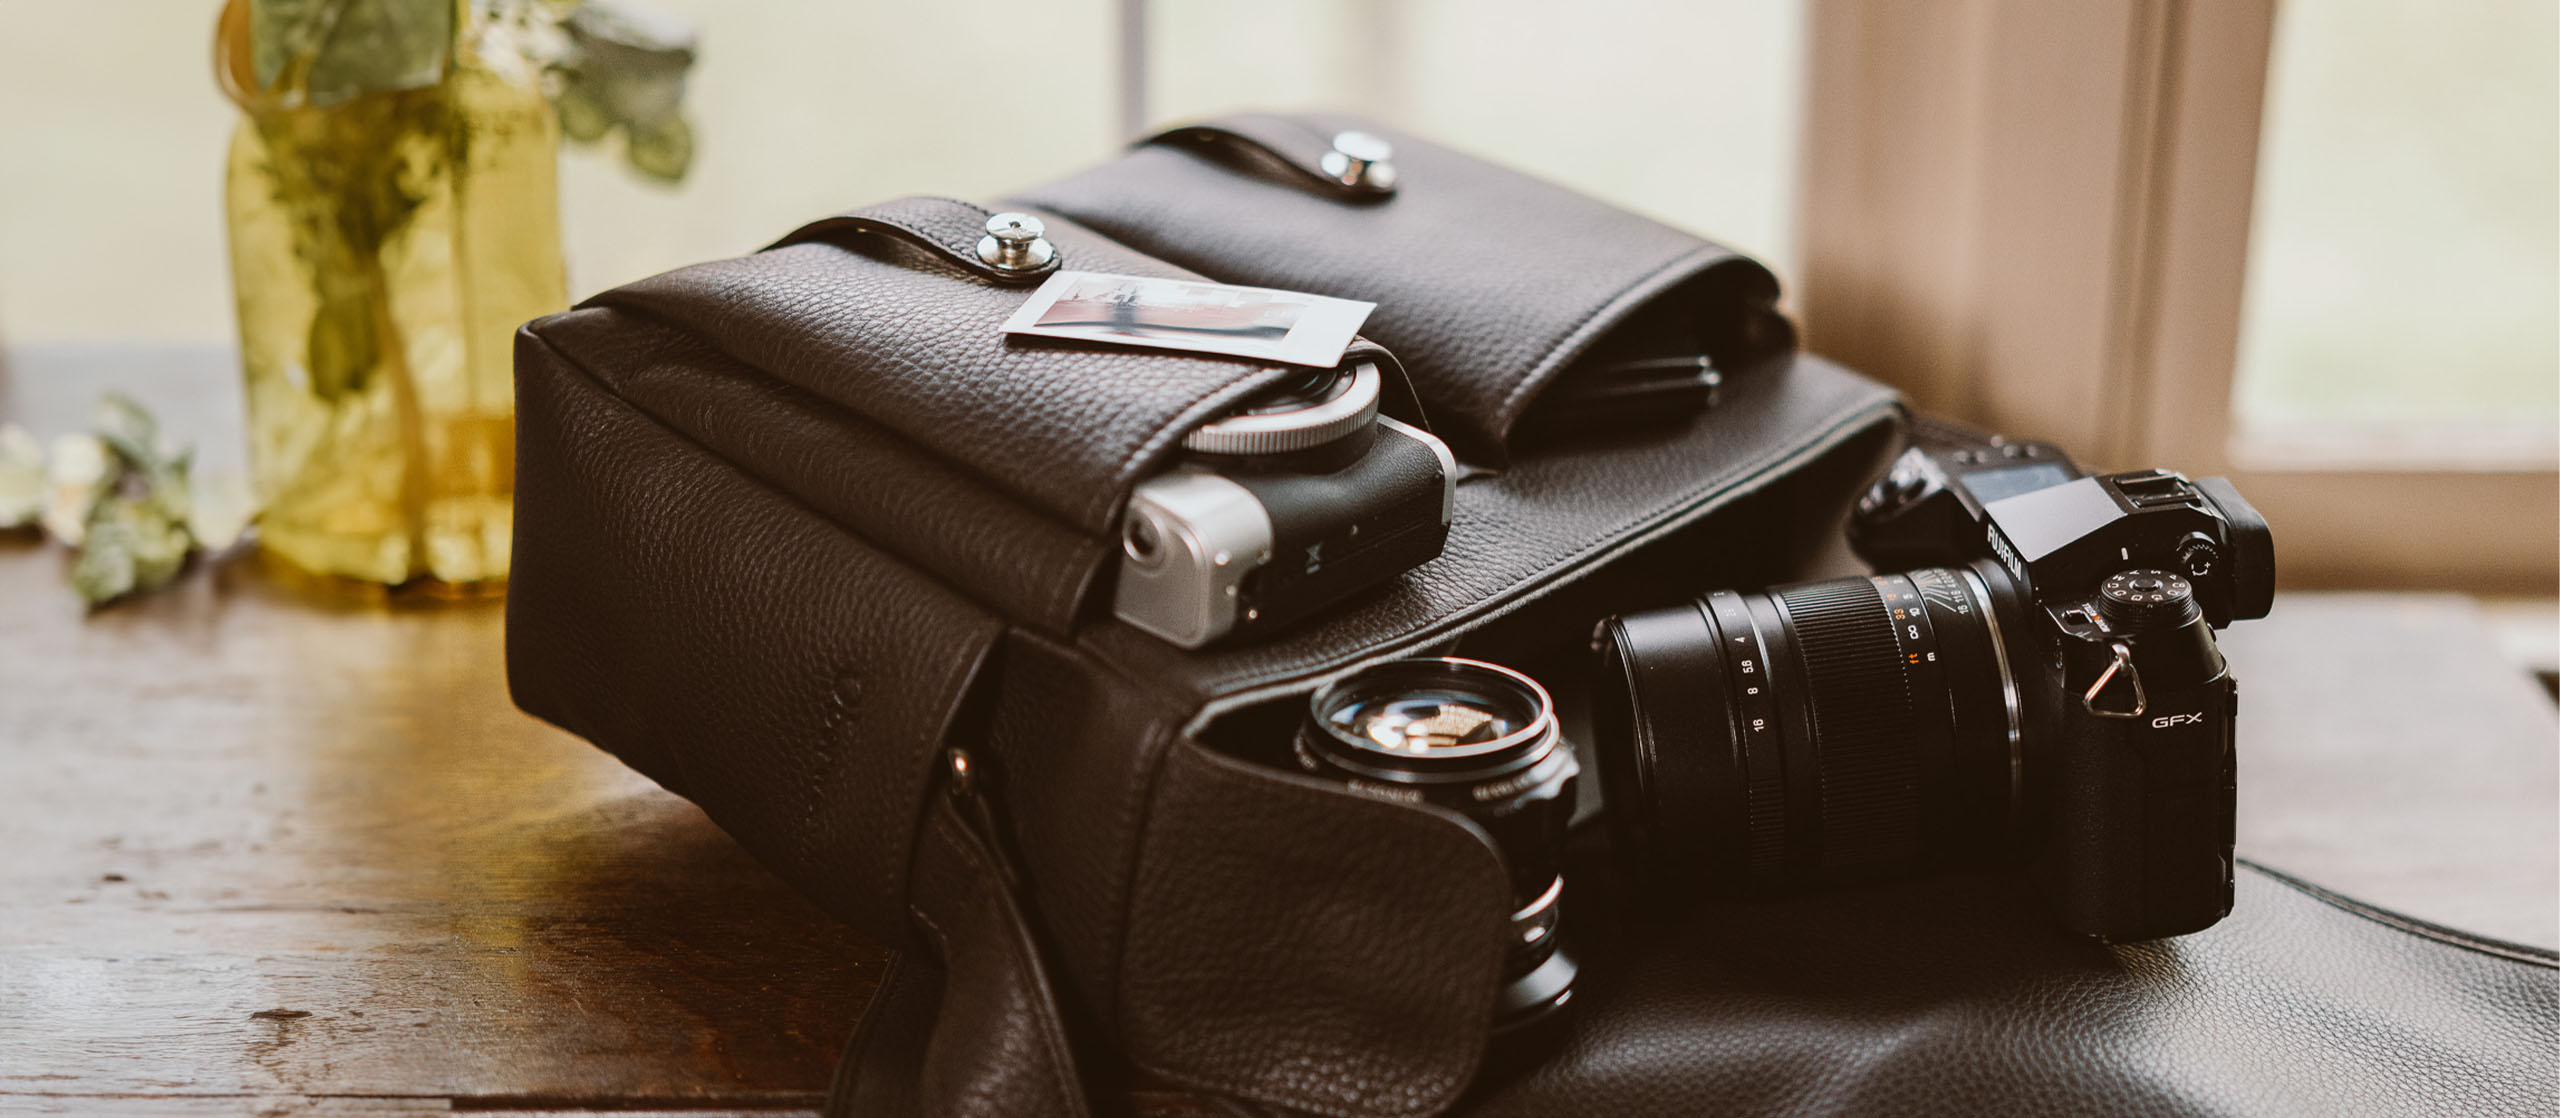 Kameratasche aus Leder von Oberwerth in einem dunklen braun  mit einer DSLR-Kamera und Objektiven steht offen und vollgepackt auf einem Tisch